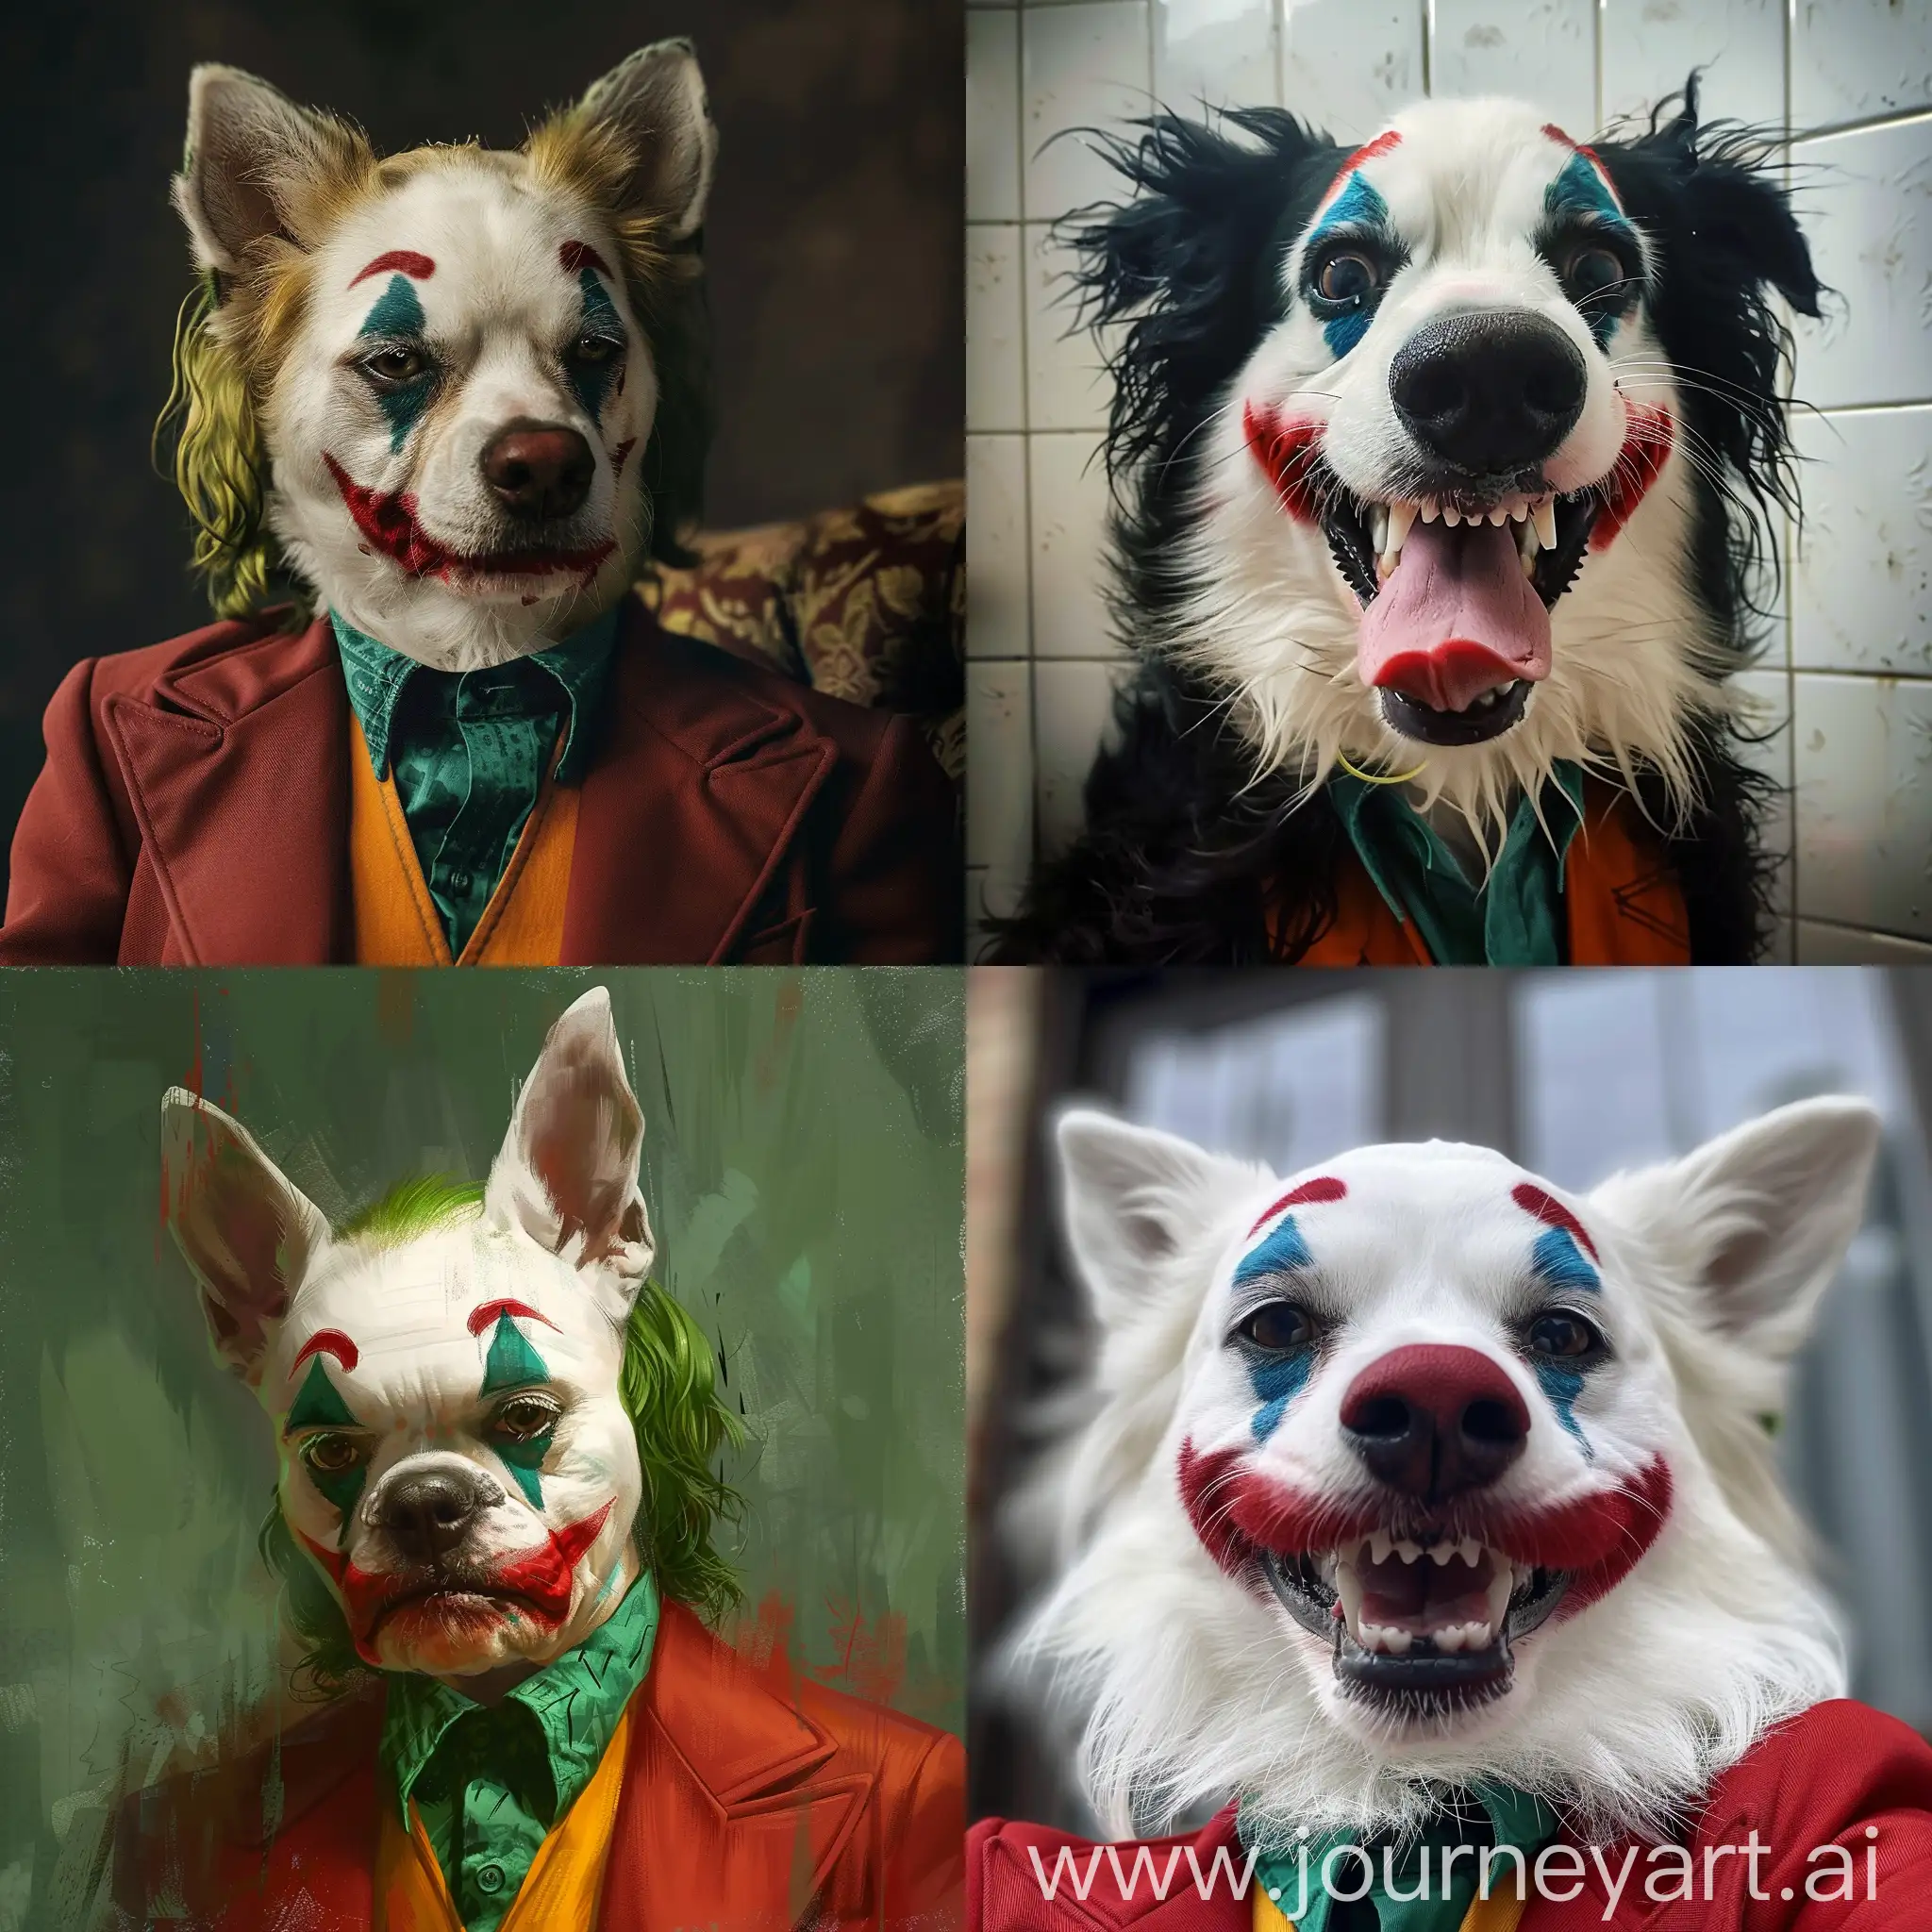 Playful-Joker-Dog-in-Vibrant-Artistic-Rendering